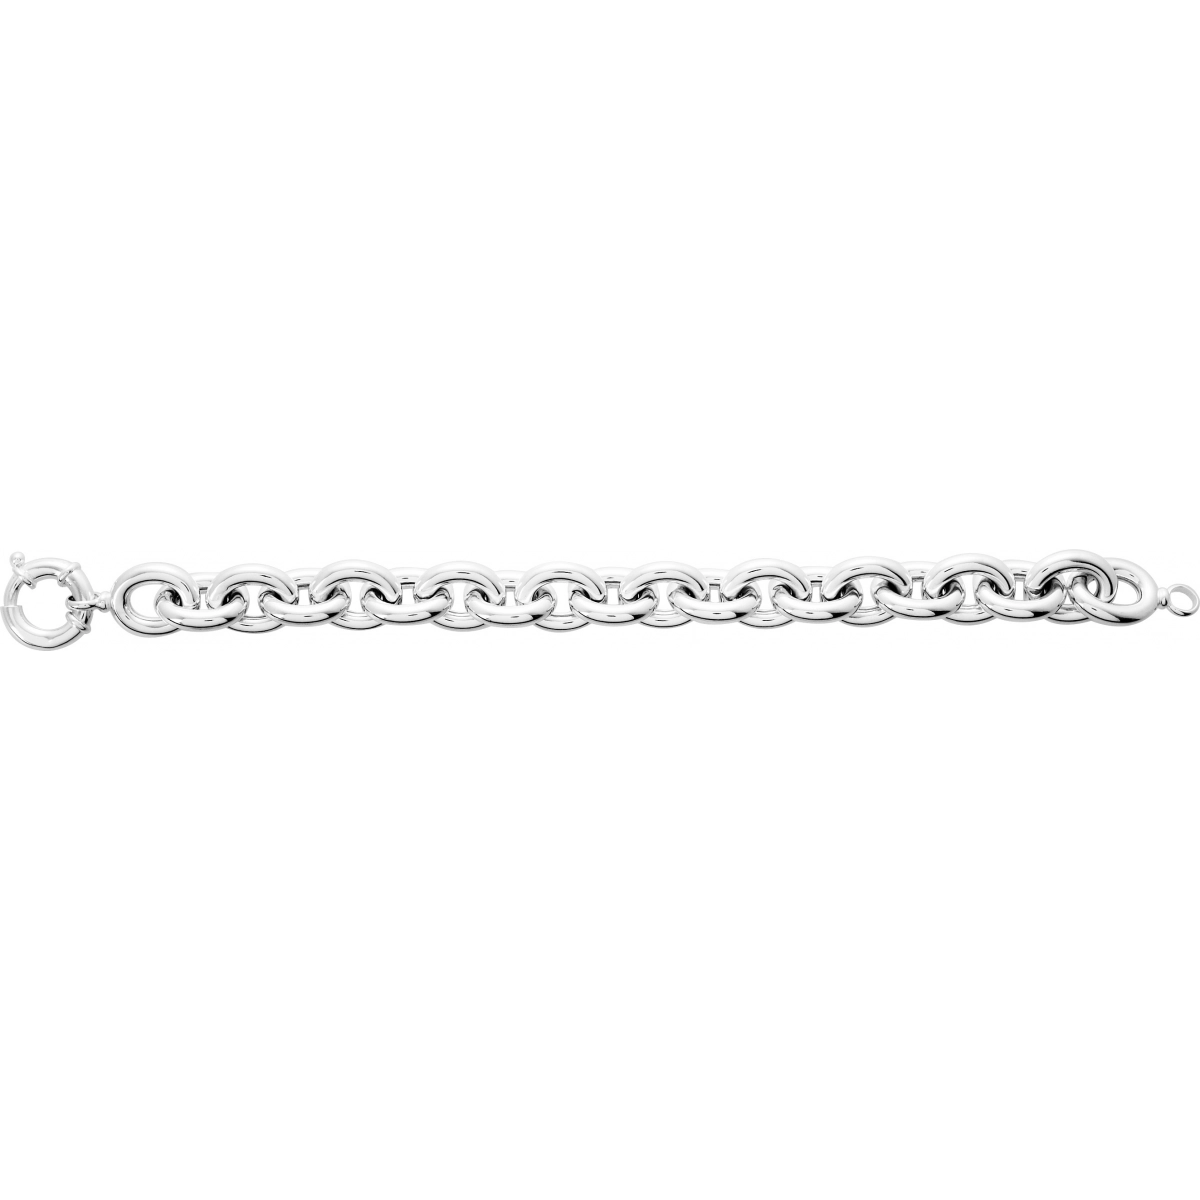 Bracelet rh925 Silver - Size: 21  Lua Blanca  303753.21